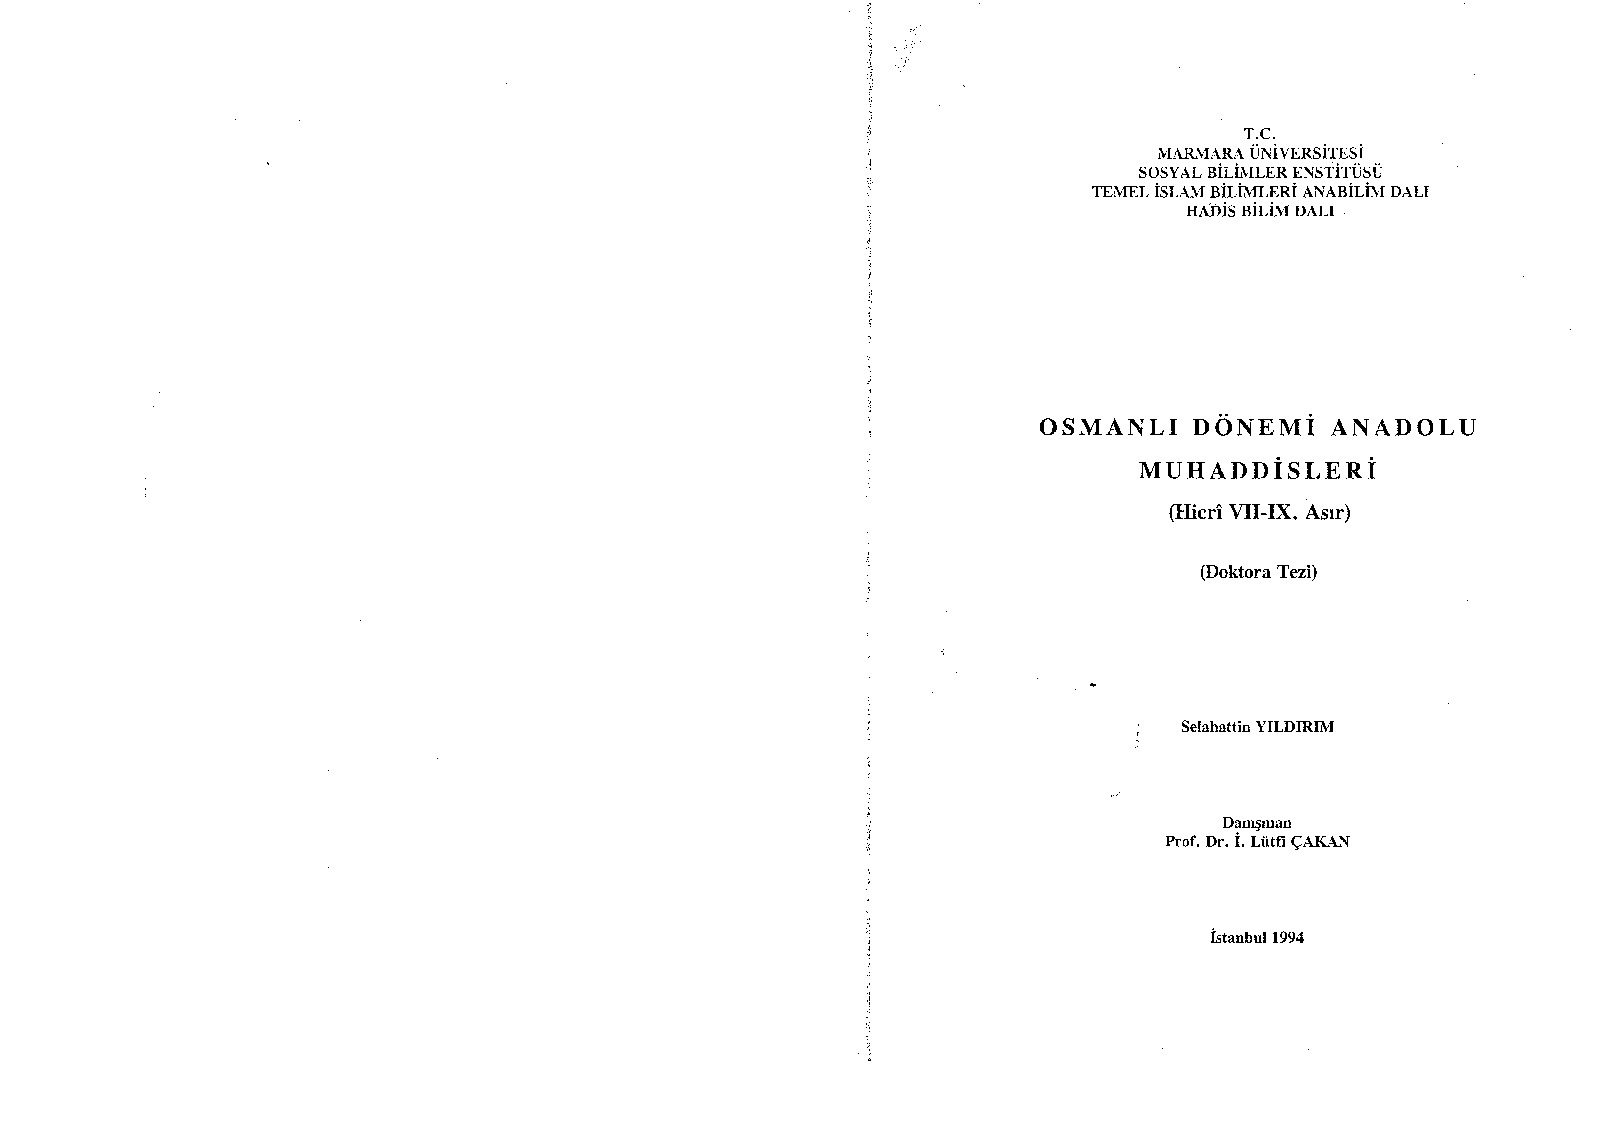 Osmanlı Dönemi Anadolu Muhaddisleri-Hicri VII-IX.Asir-Selahetdin Yıldırım-1994-240s